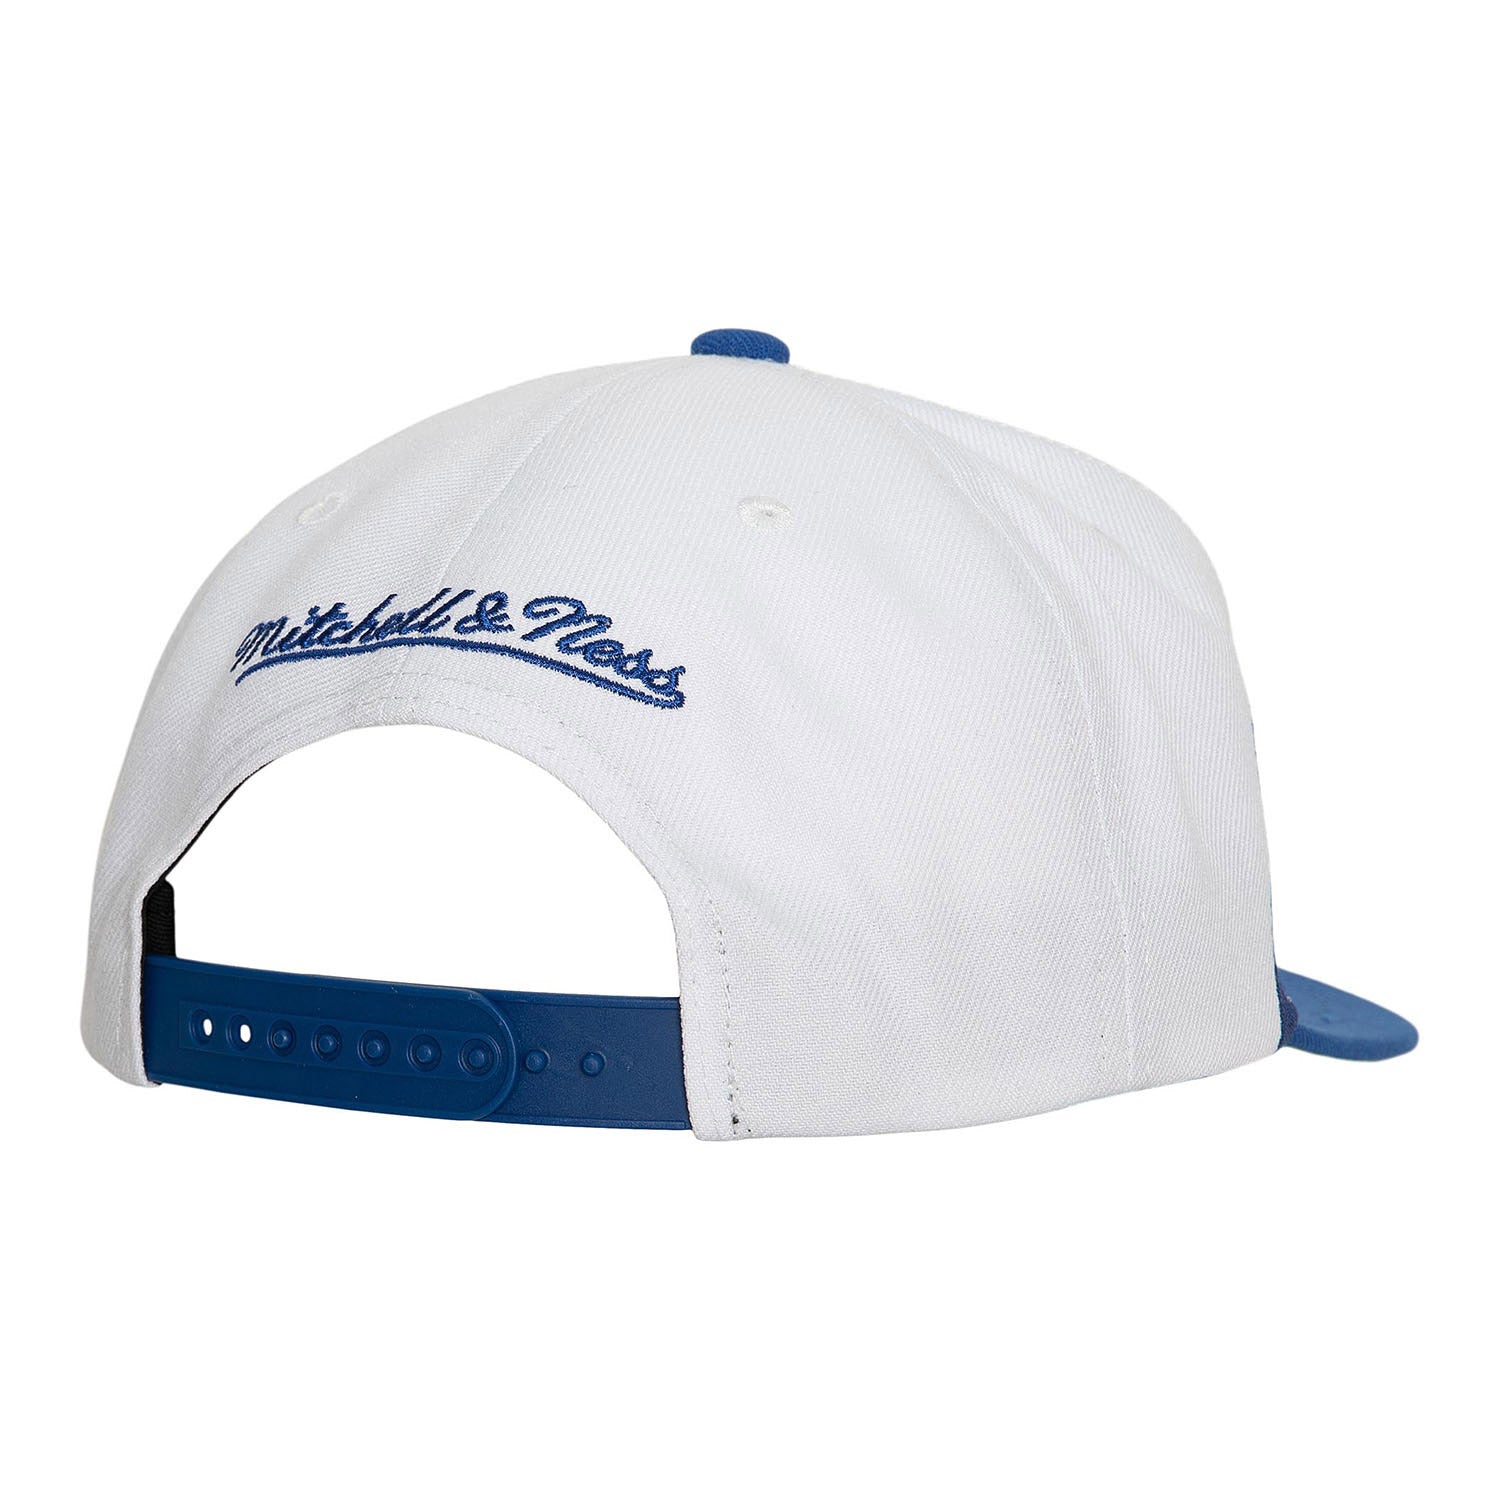 Fargo South Bruins Hockey Snapback Hat